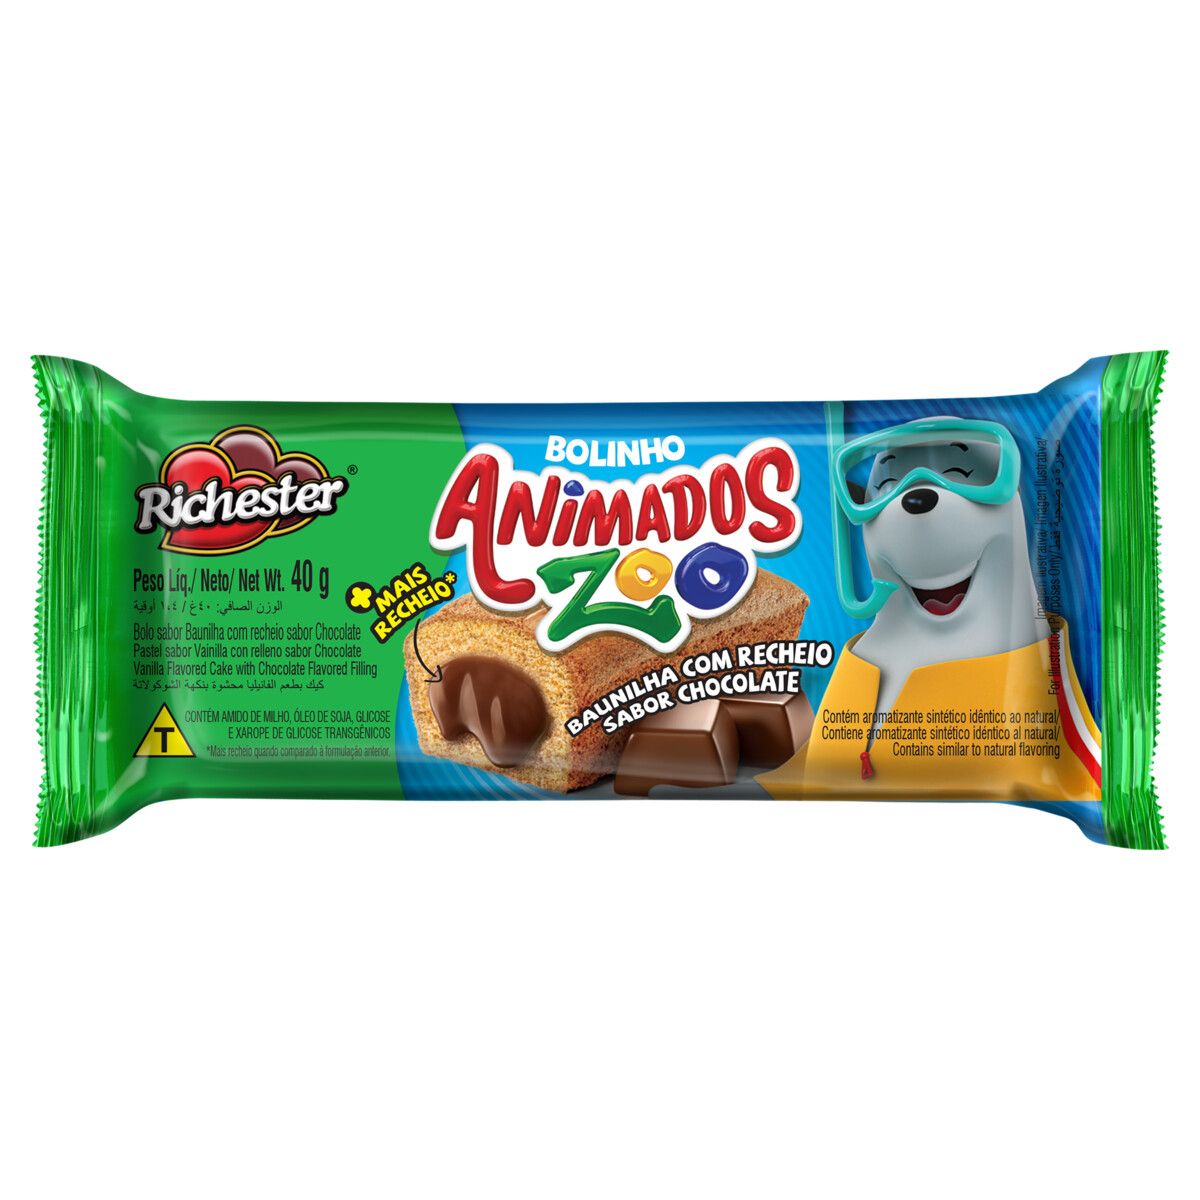 Bolinho Baunilha Recheio Chocolate Richester Animados Zoo Pacote 40g